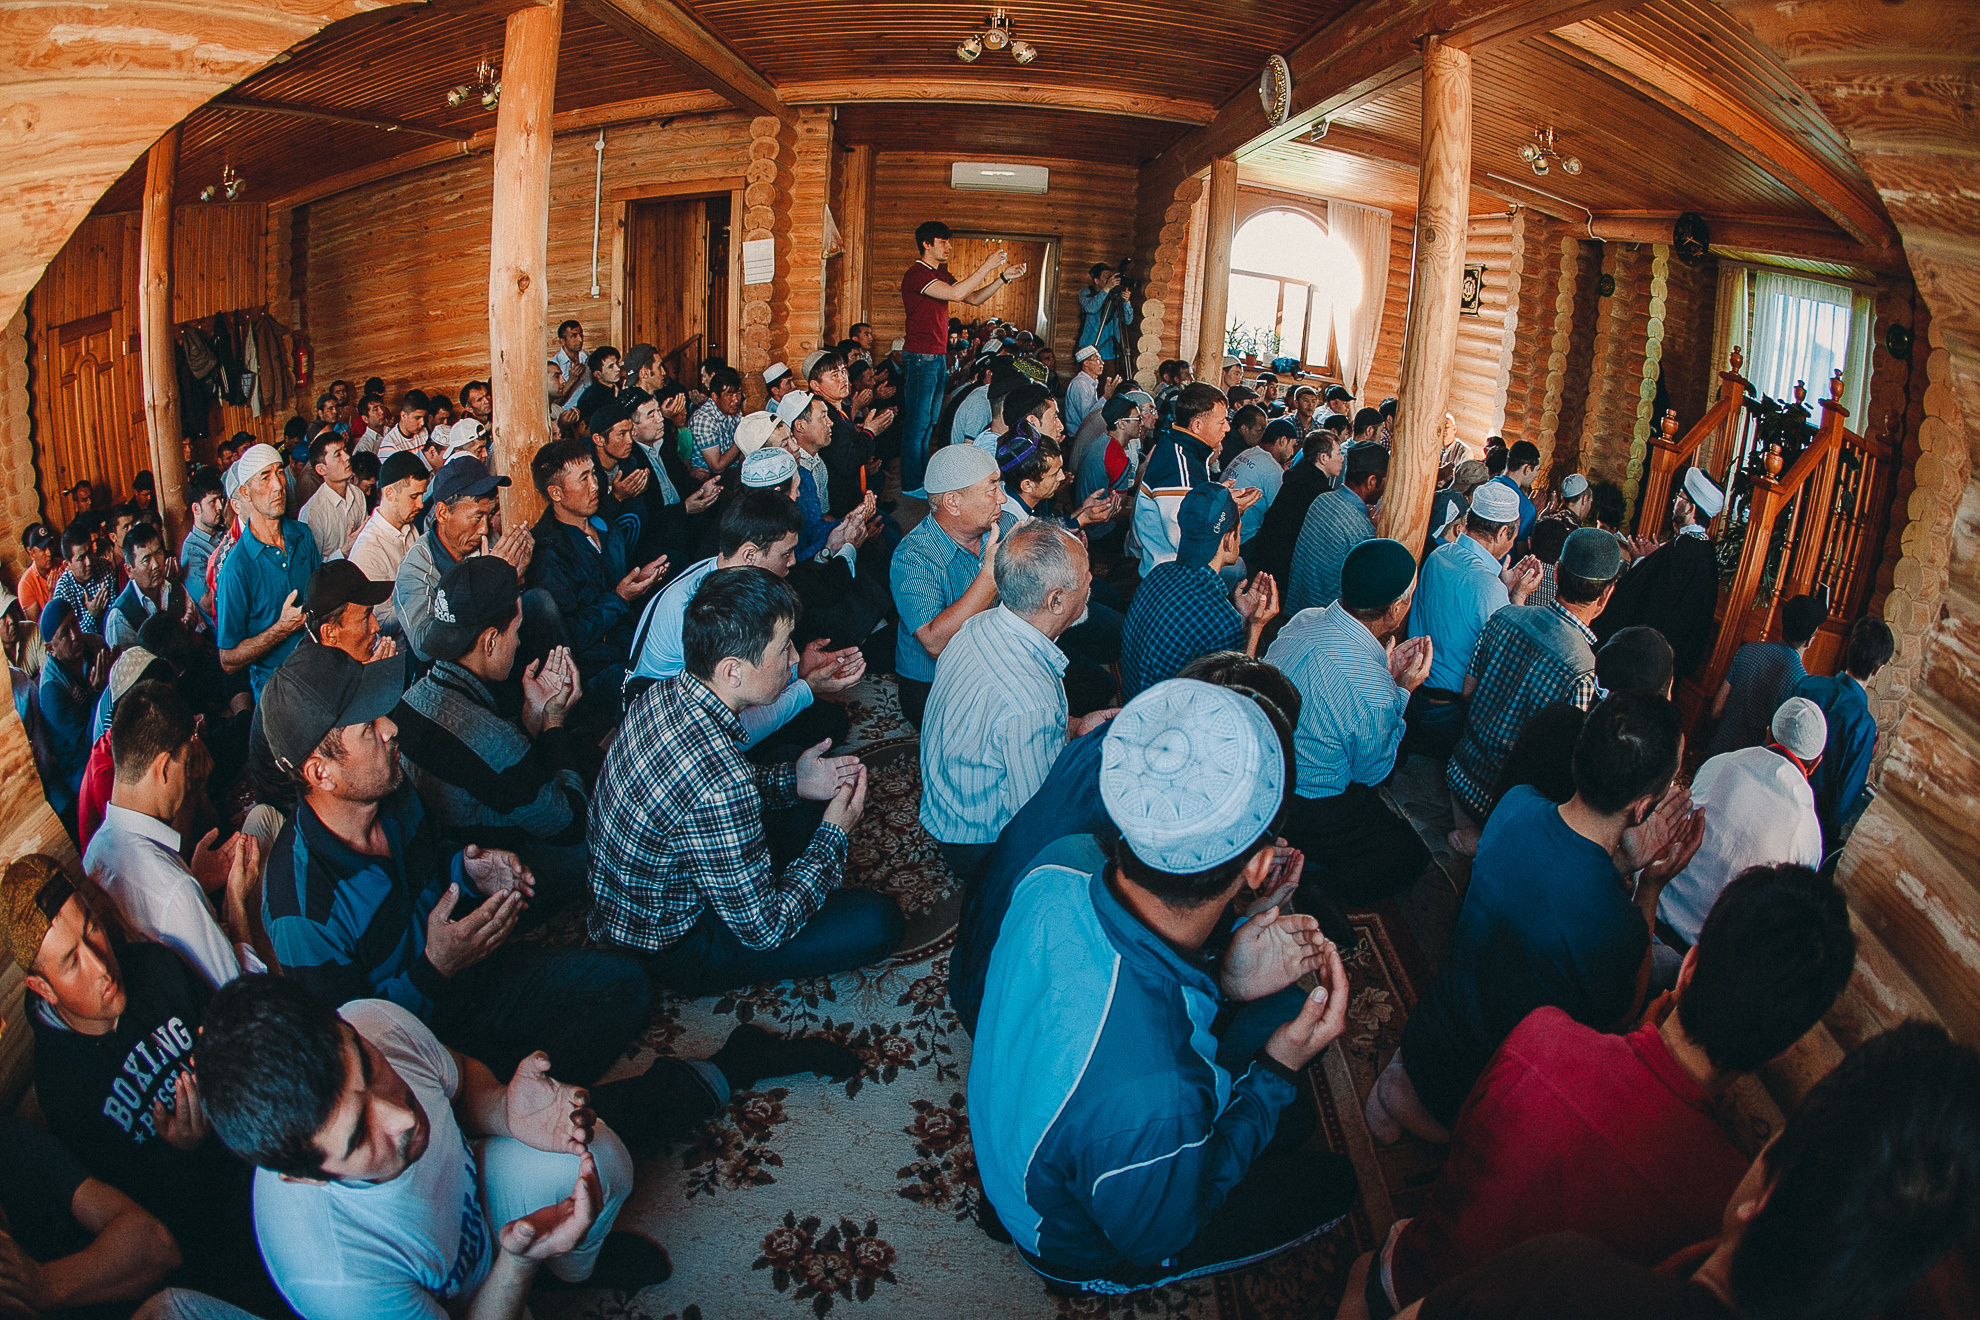 Желающих послушать проповедь в здании мечети было немало, но удалось сделать это лишь некоторым: скромные размеры молебенного дома не позволяют принять большое число прихожан